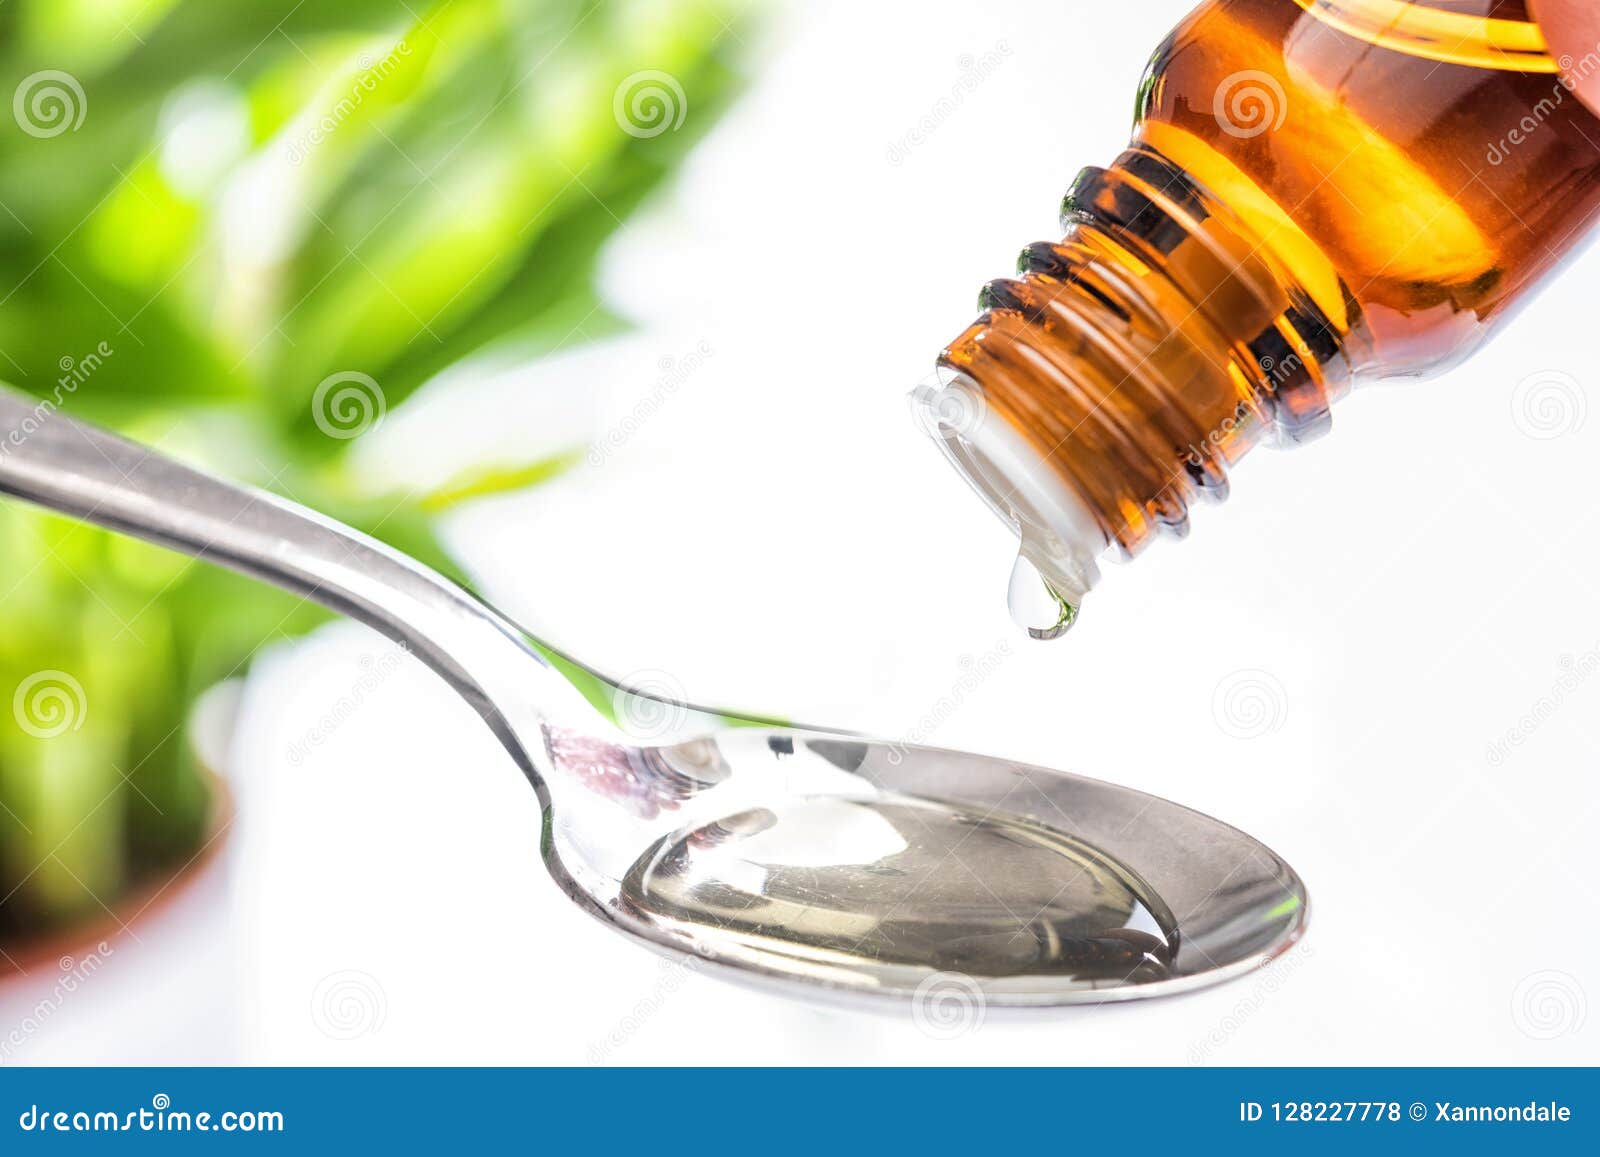 medicine drops with spoon